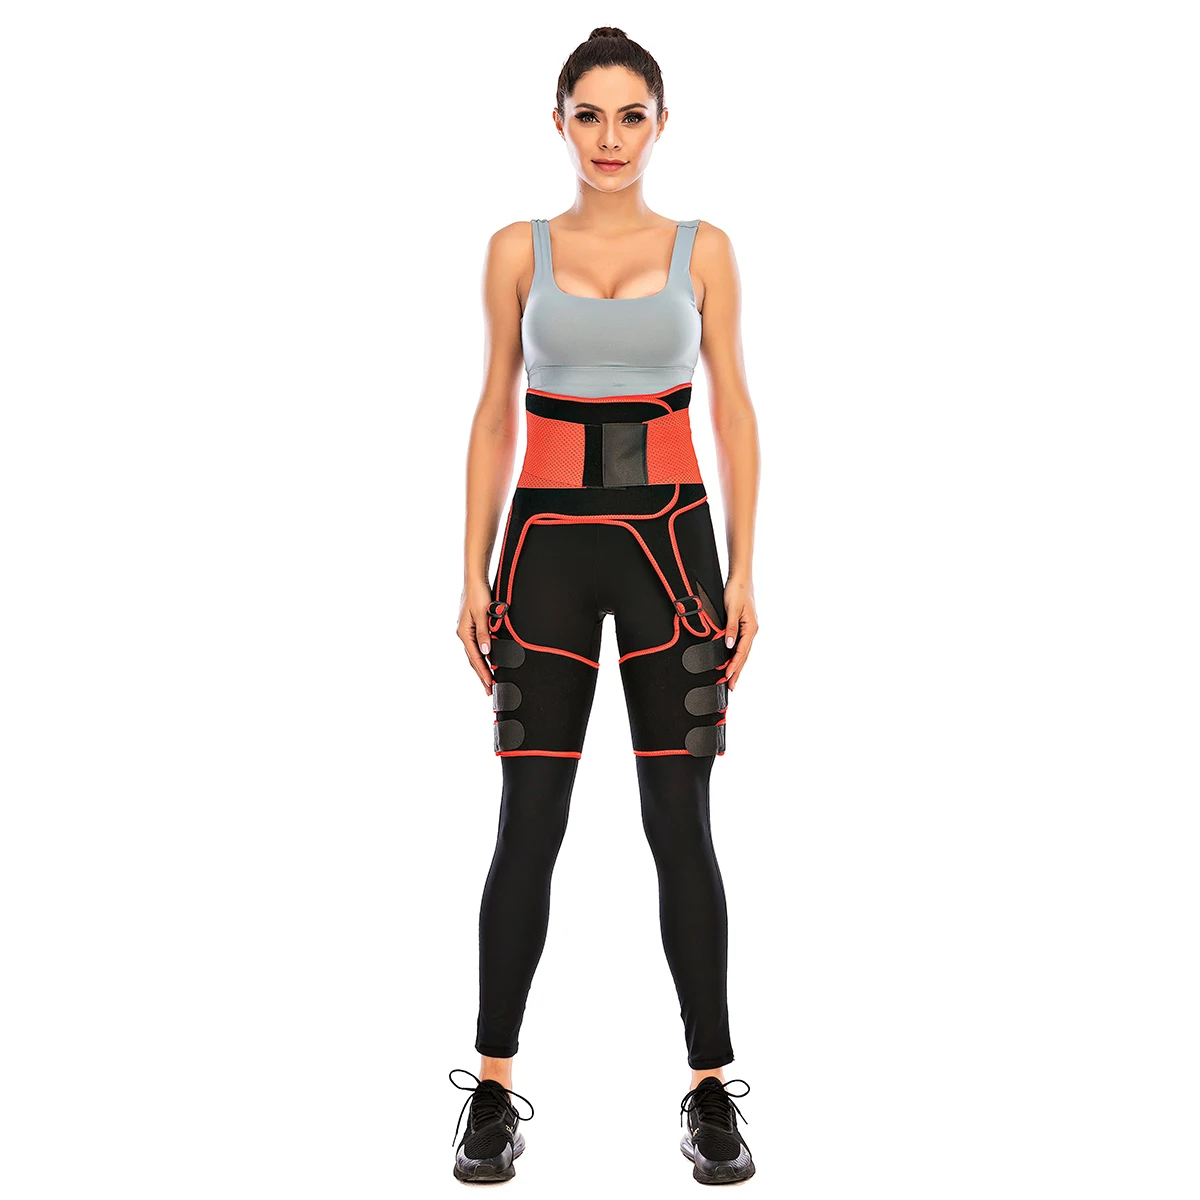 

New Design Fitness Exercise Belly Wrap Trimmer Slimmer Compression Band Waist Trainer Belt Body Shaper Adjustable Thigh Eraser, Black,rose red, orange red